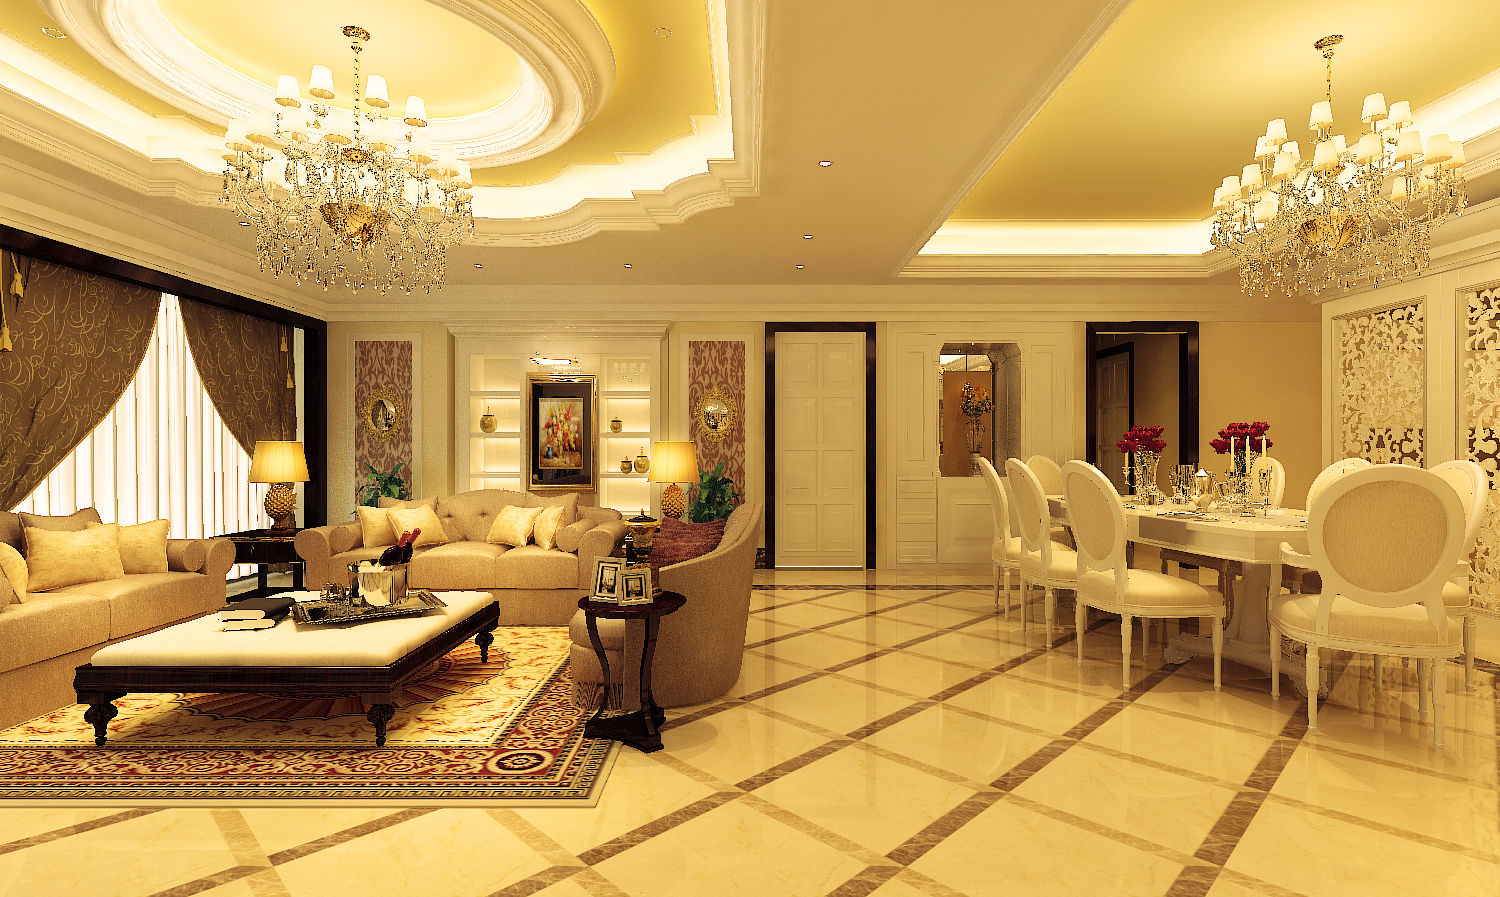 Trang trí nội thất khách sạn 4-5 sao là một phần trong sự hoàn hảo của khách sạn. Sự kết hợp giữa các yếu tố thẩm mỹ và chức năng, nội thất trang trí đem lại cảm giác yên tĩnh và thoải mái cho khách hàng. Hãy tham gia để xem qua những hình ảnh trang trí nội thất khách sạn 4-5 sao của chúng tôi, mang lại cho bạn cảm giác như đang đắm chìm trong không gian đẹp và hoàn mỹ.